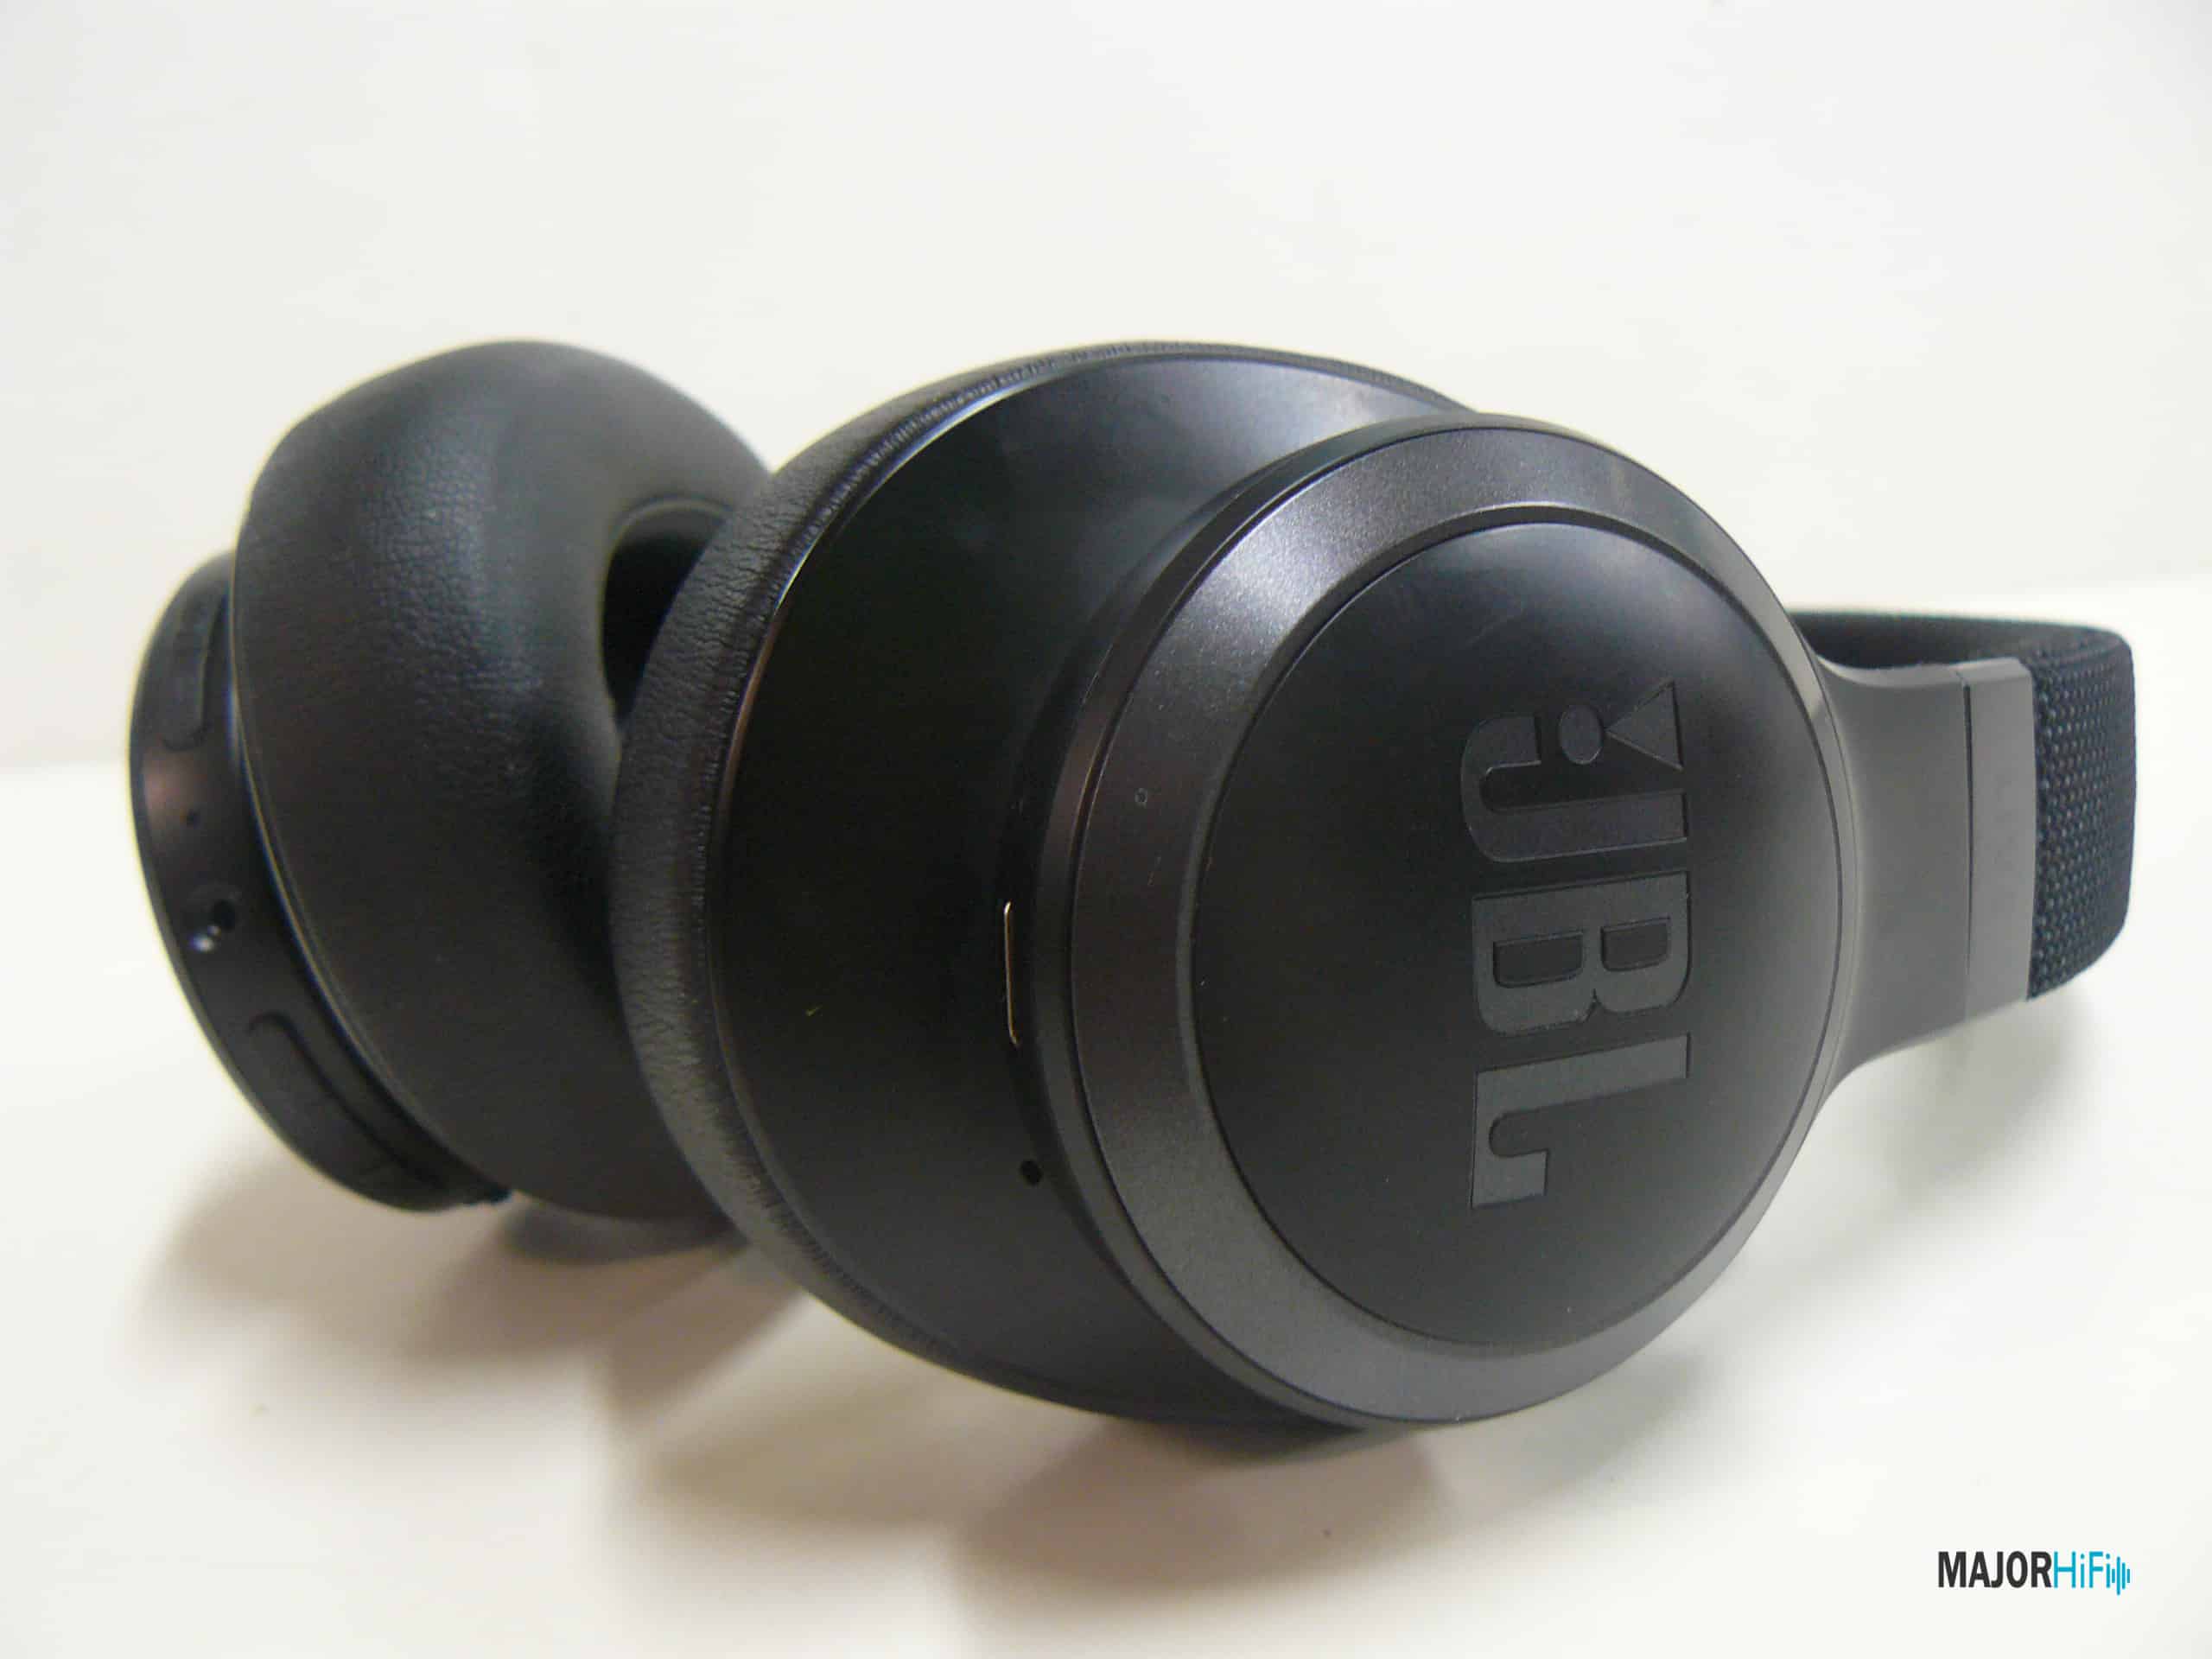 JBL Live 660NC headphones